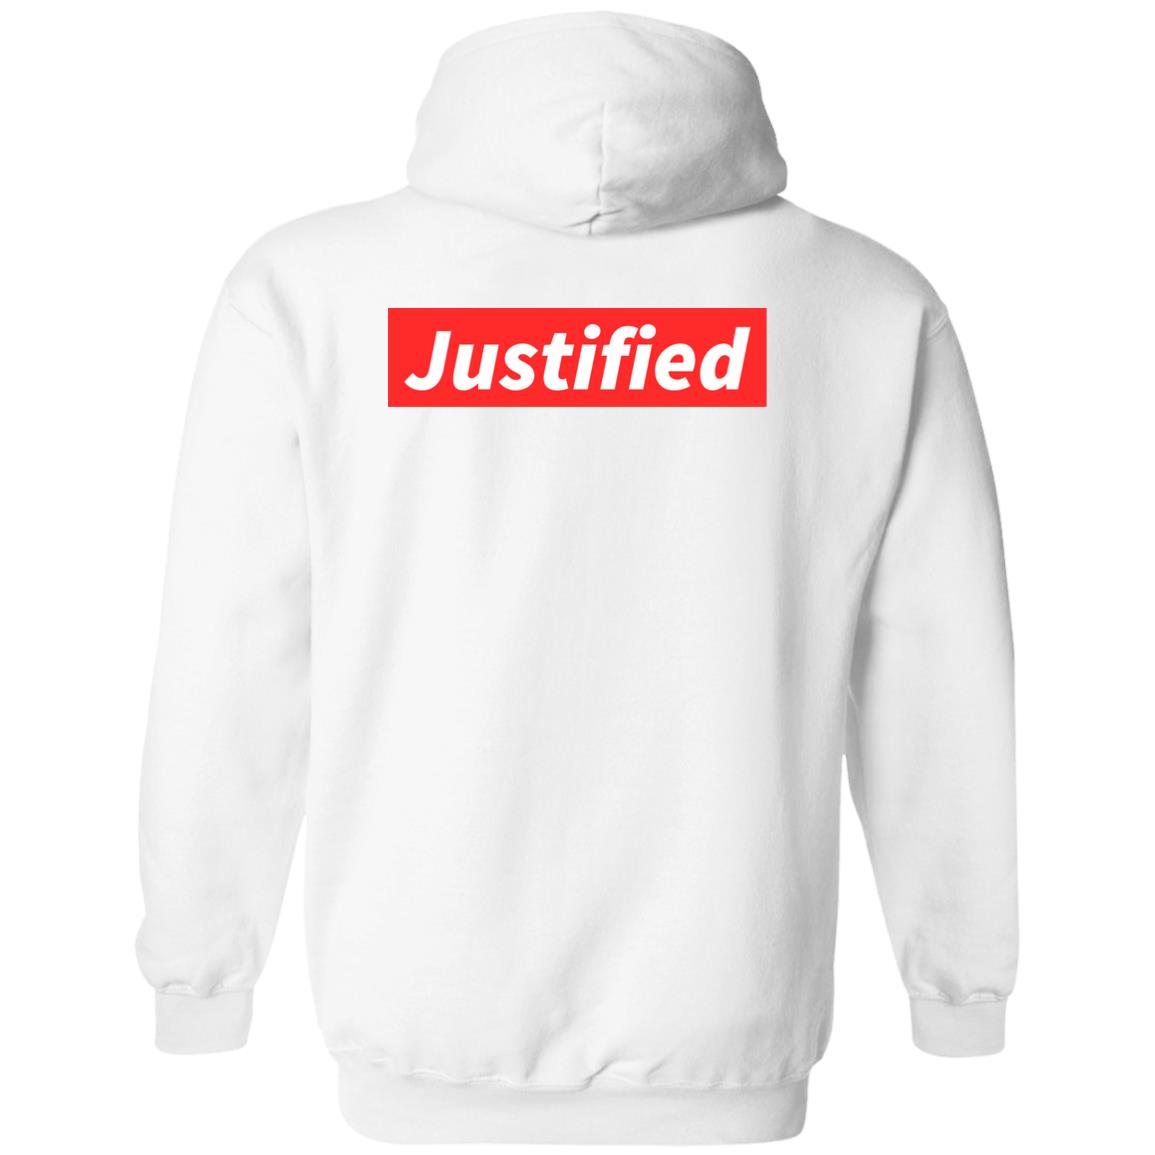 Justified (Unisex Hoodie)